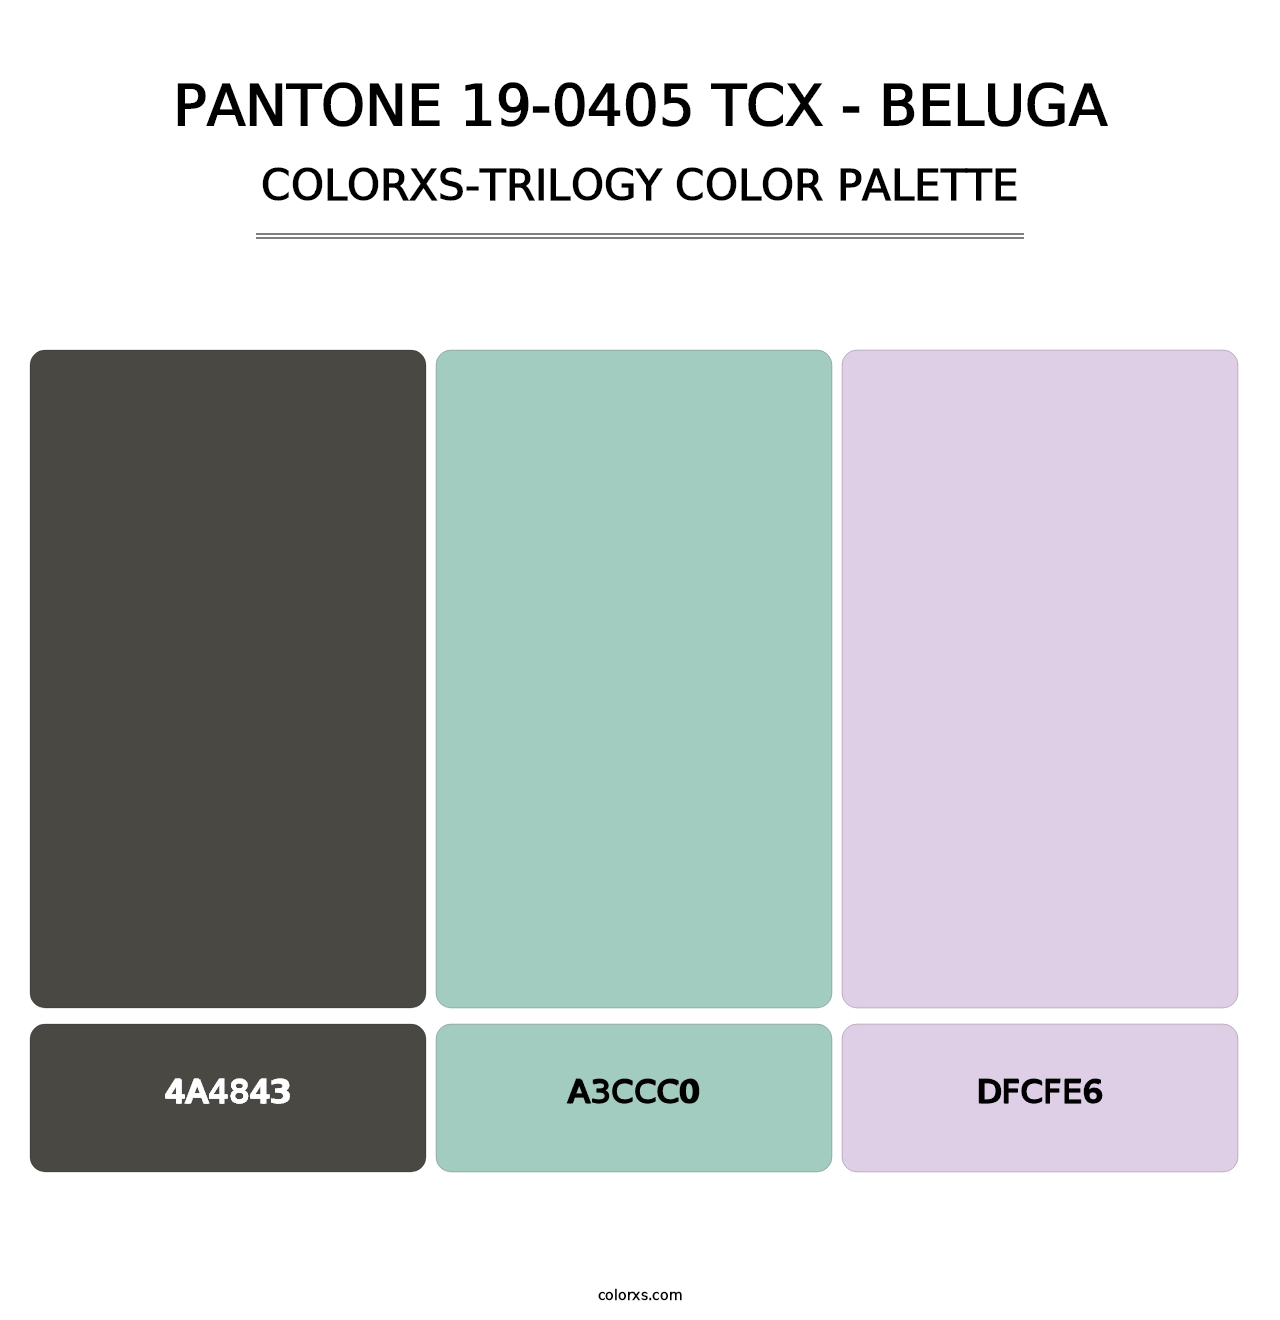 PANTONE 19-0405 TCX - Beluga - Colorxs Trilogy Palette